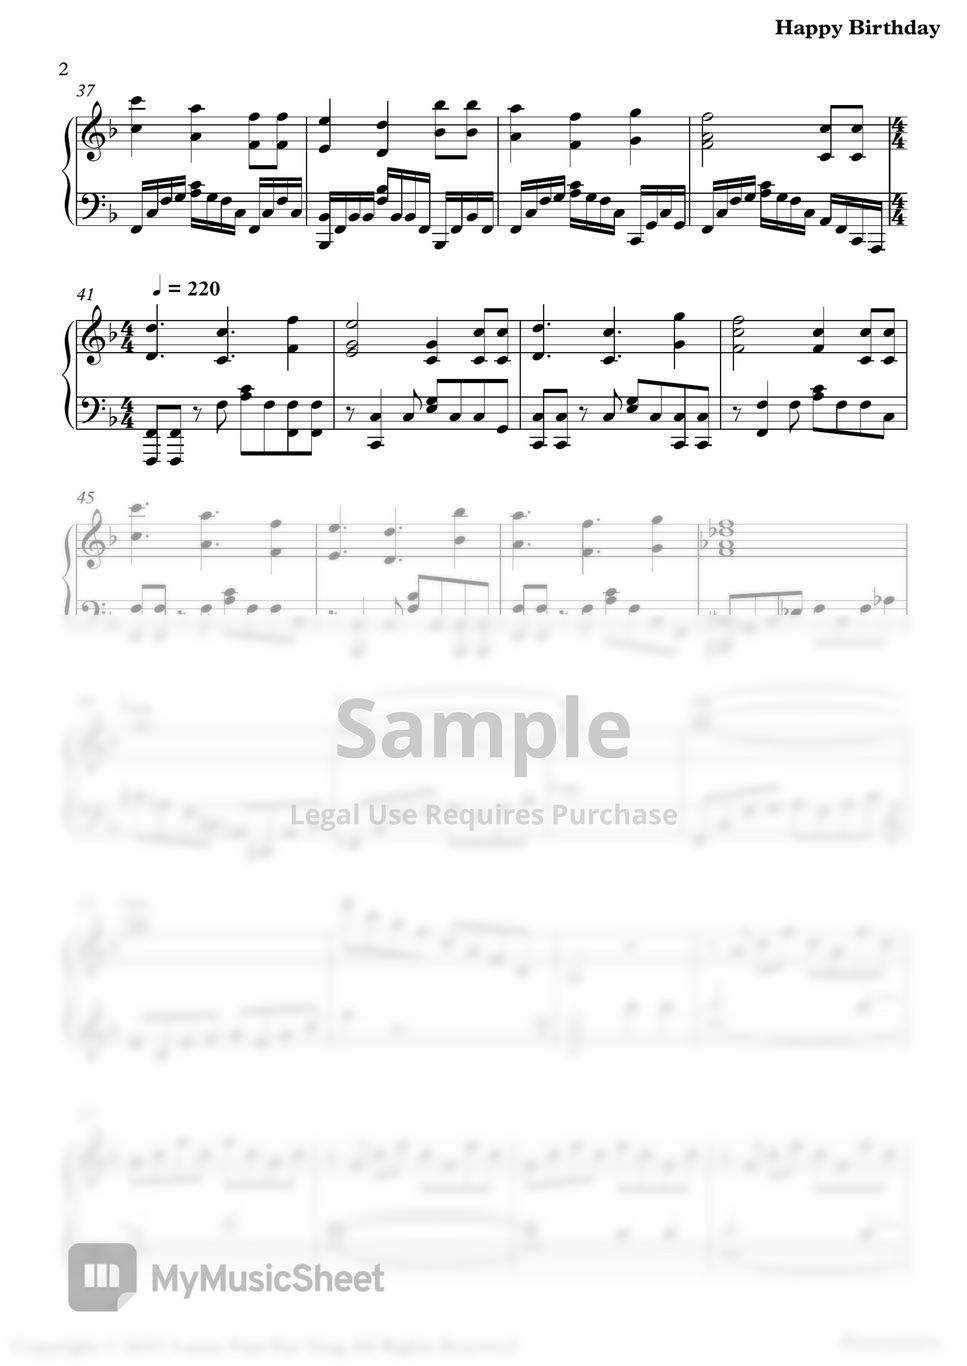 Pianominion - Happy Birthday by Pianominion